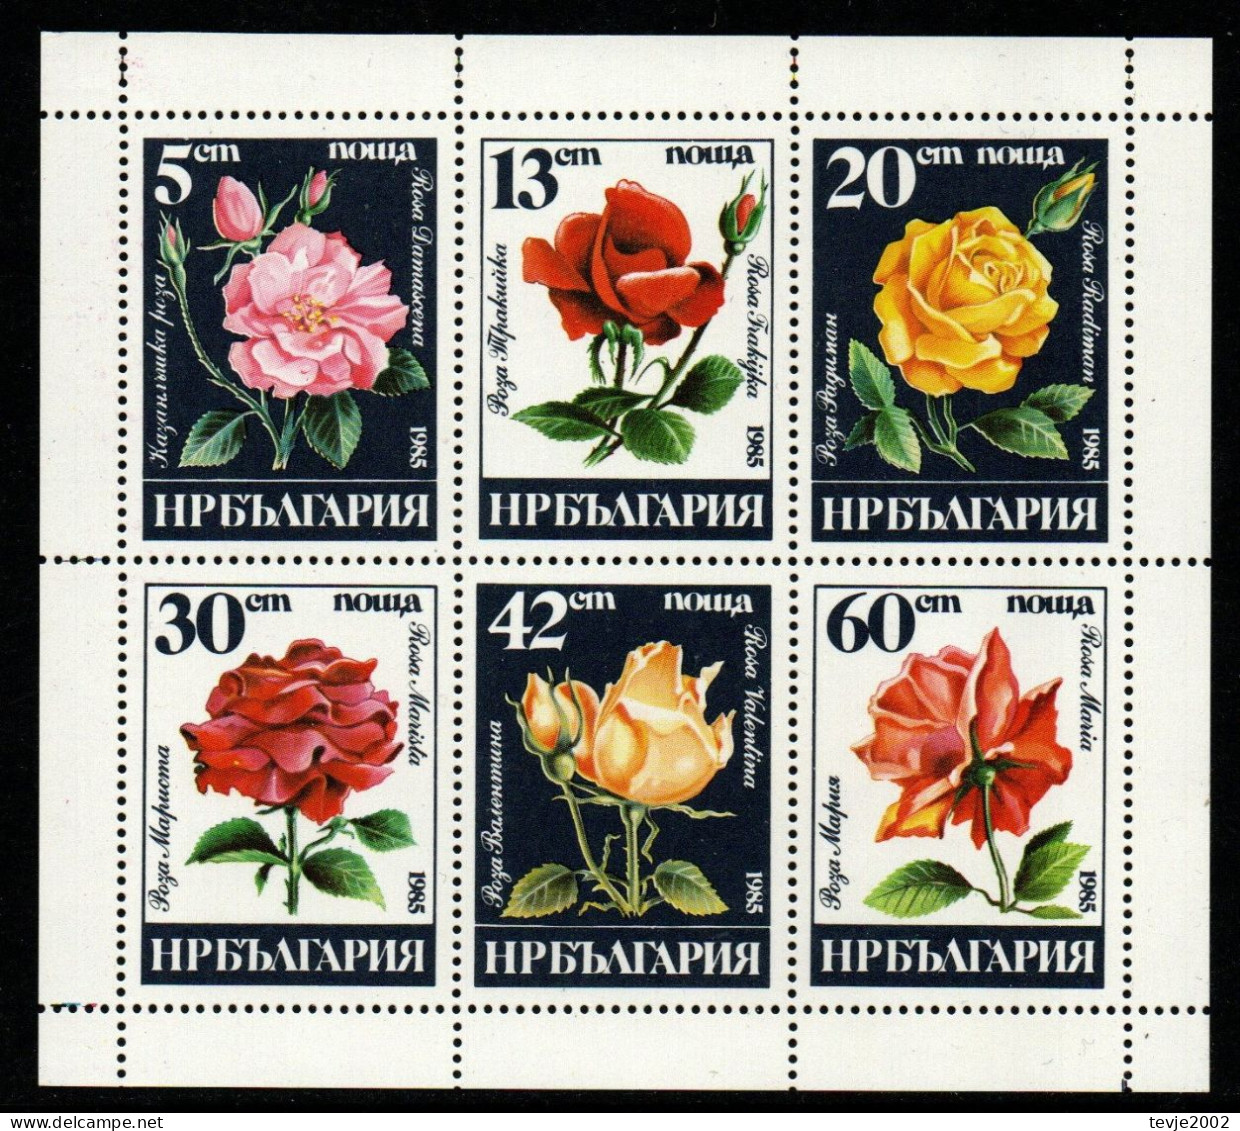 Bulgarien 1985 - Mi.Nr. 3373 - 3378 Kleinbogen - Postfrisch MNH - Blumen Flowers Rosen Roses - Rozen